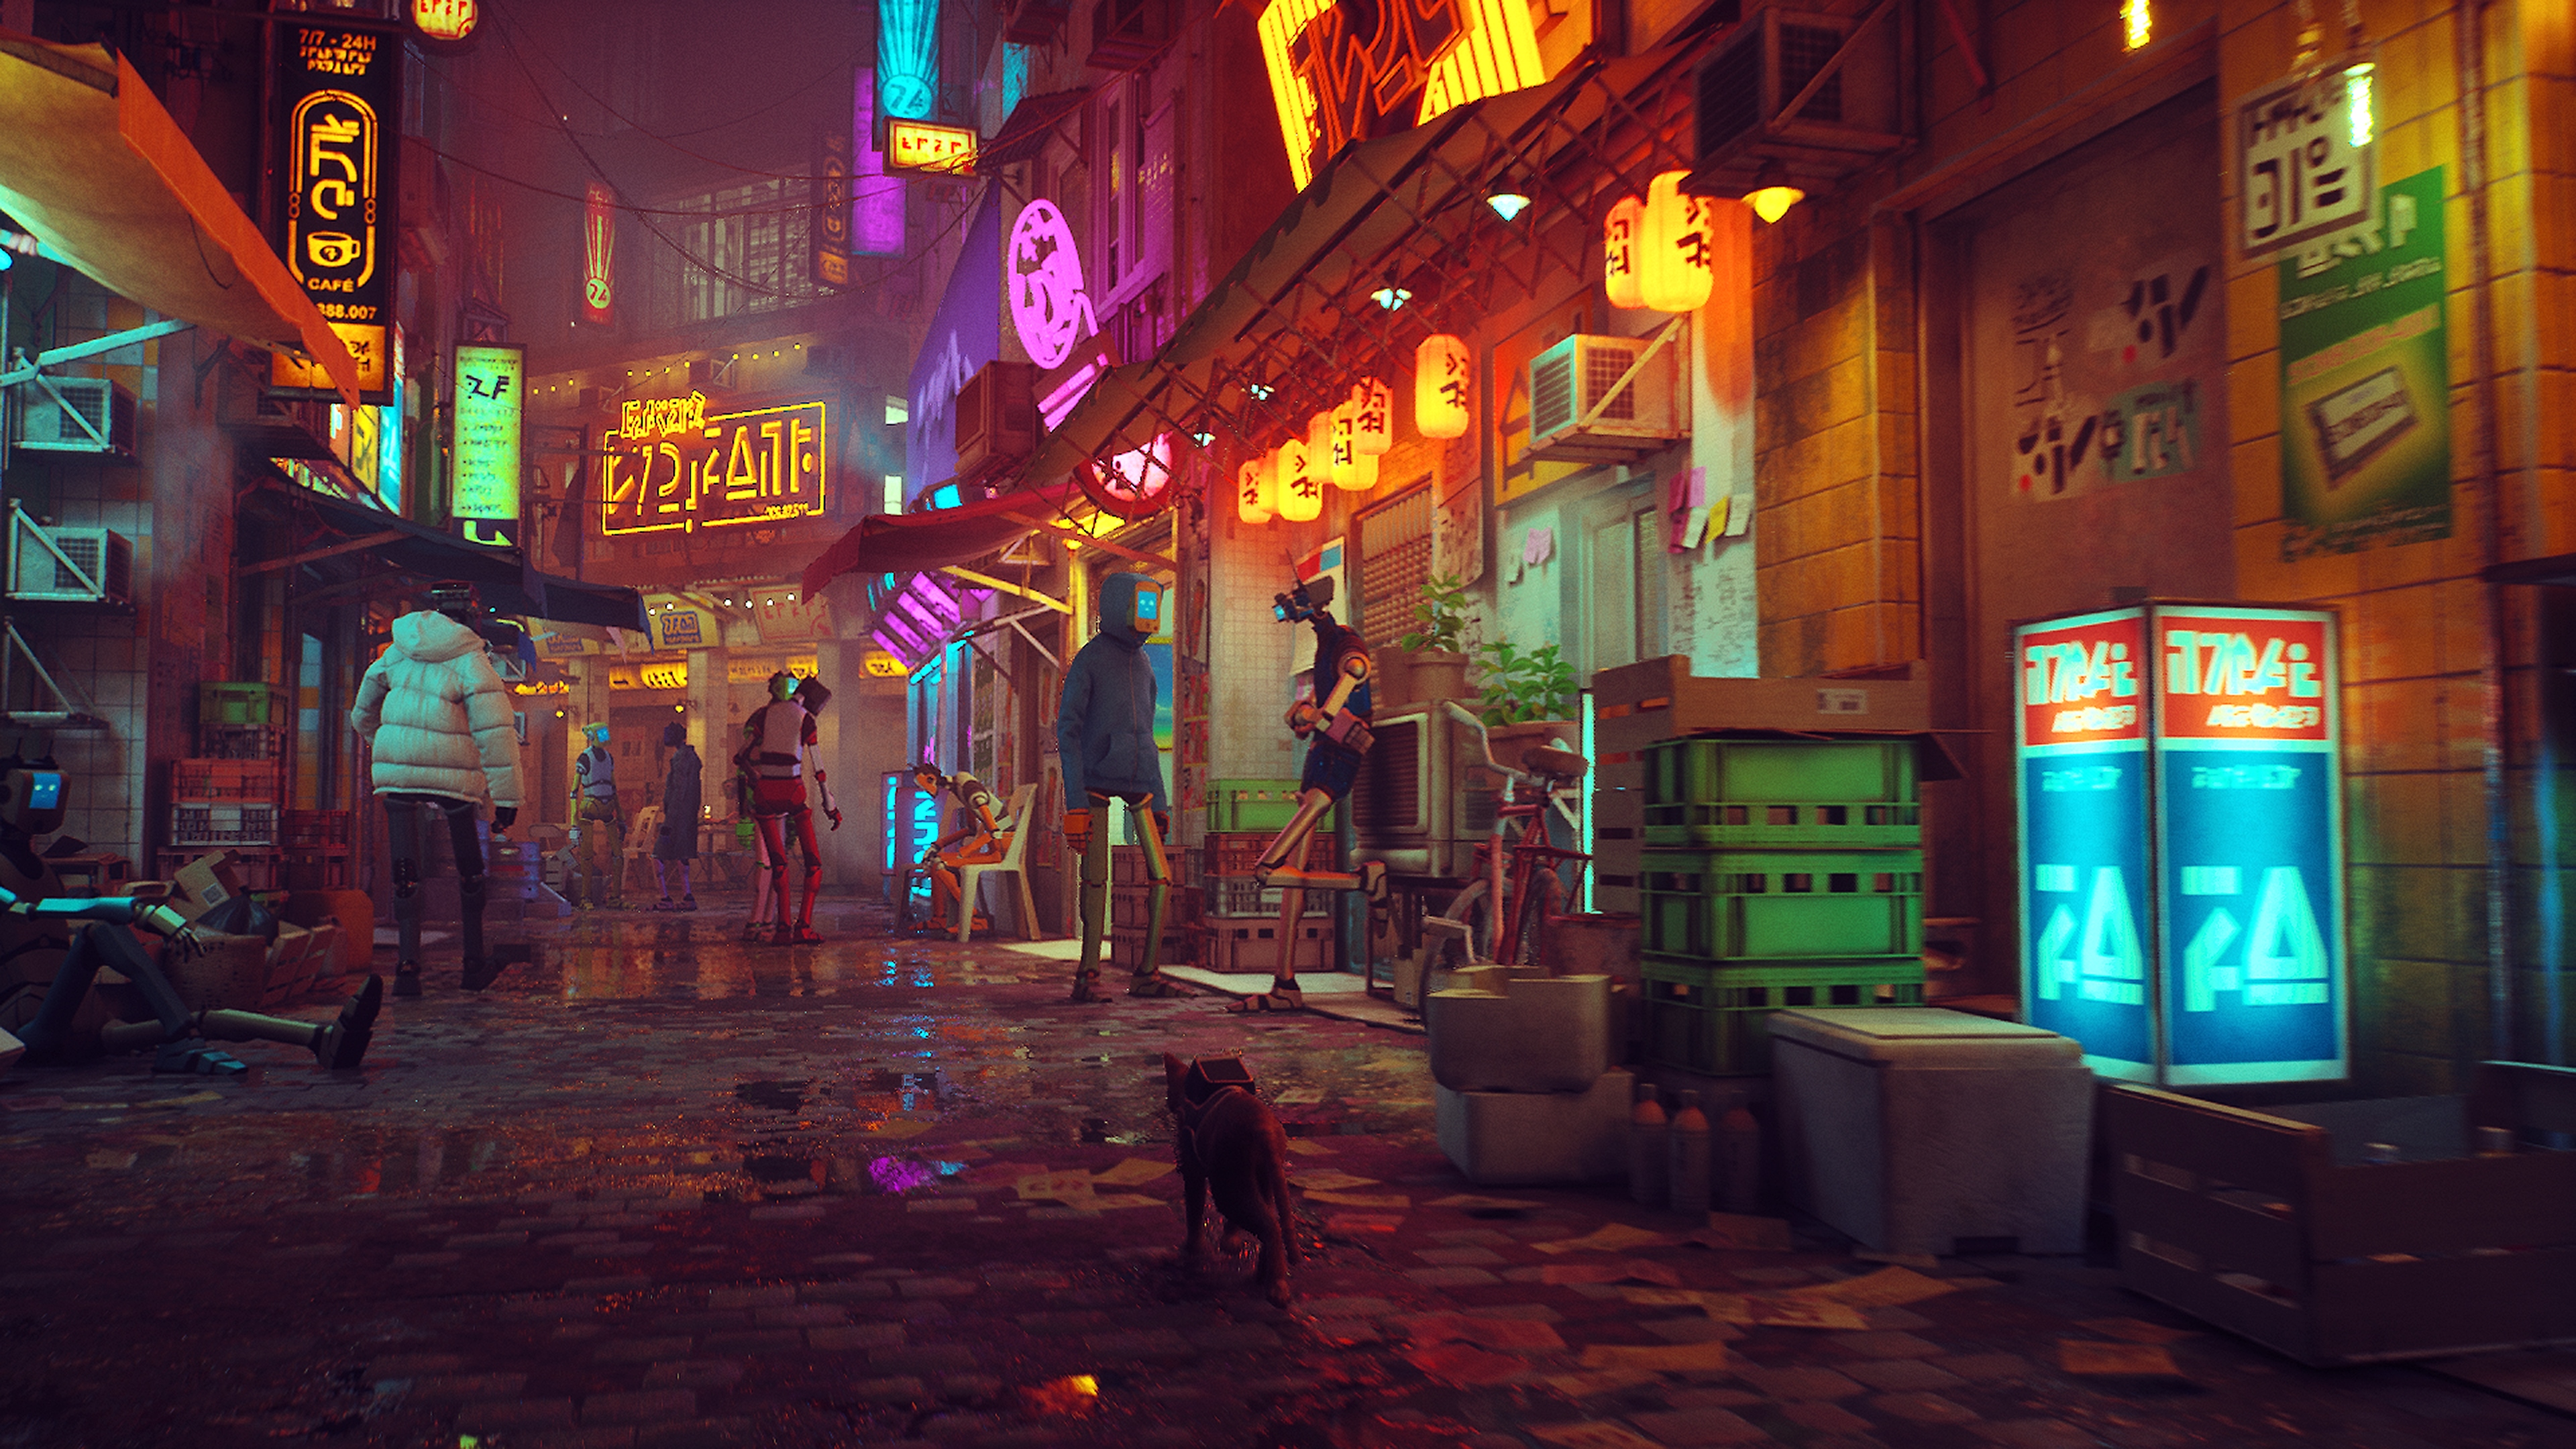 Snímka obrazovky z hry Stray zobrazujúca neónmi osvetlenú ulicu